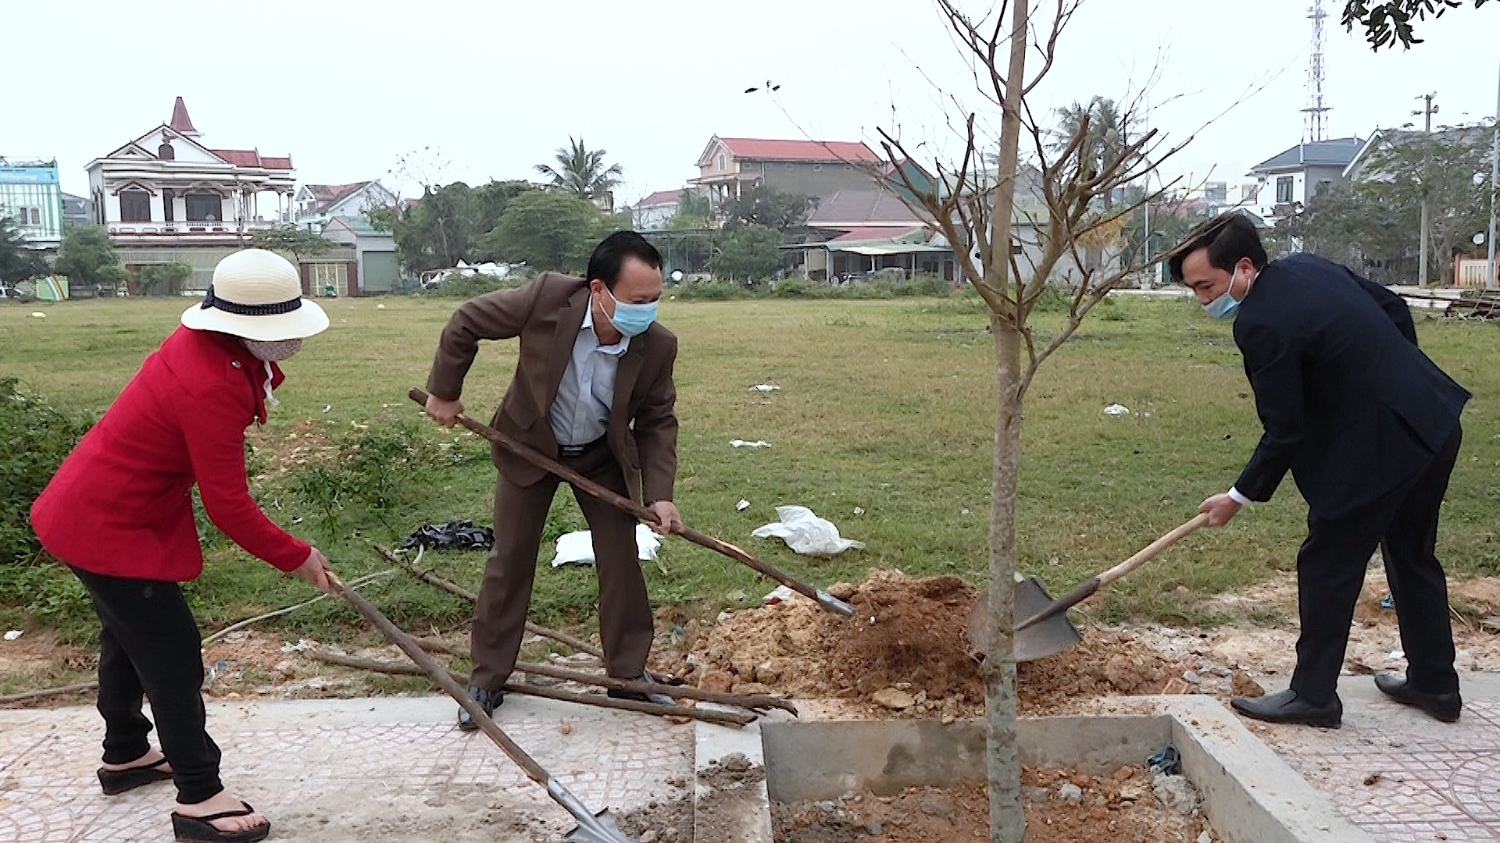 Đồng chí Phạm Duy Quang– Phó Bí thư Thường trực Thị ủy, Chủ tịch HĐND thị xã trồng cây nhân dịp đầu xuân Nhâm Dần 2022 tại đình làng Phan Long.